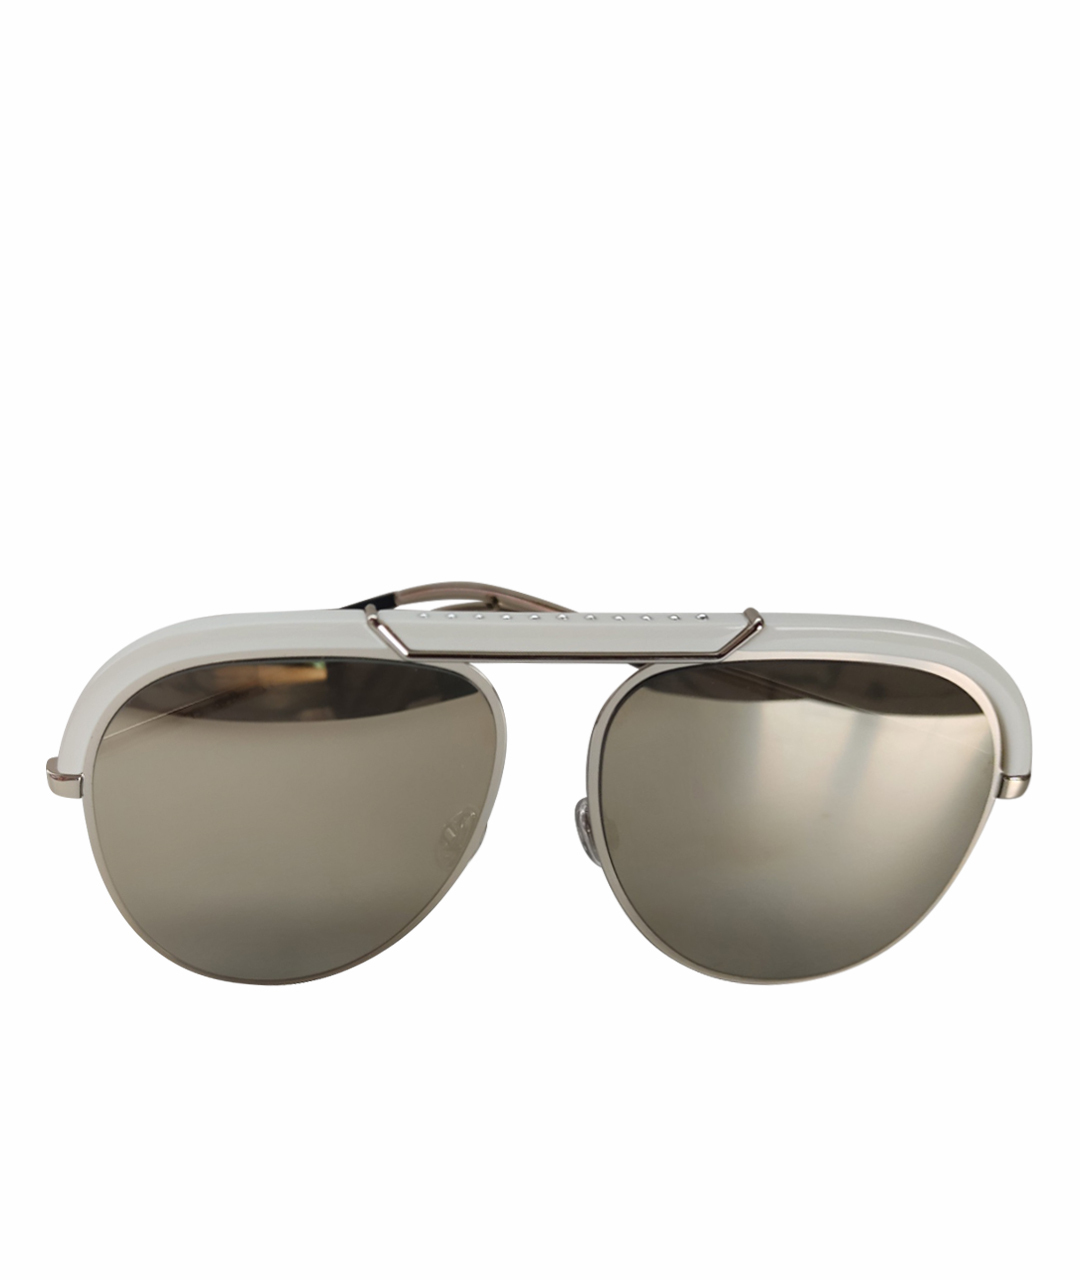 Солнцезащитные очки DIOR HOMME для мужчин купить за 17000 руб арт 524073   Интернетмагазин Oskelly